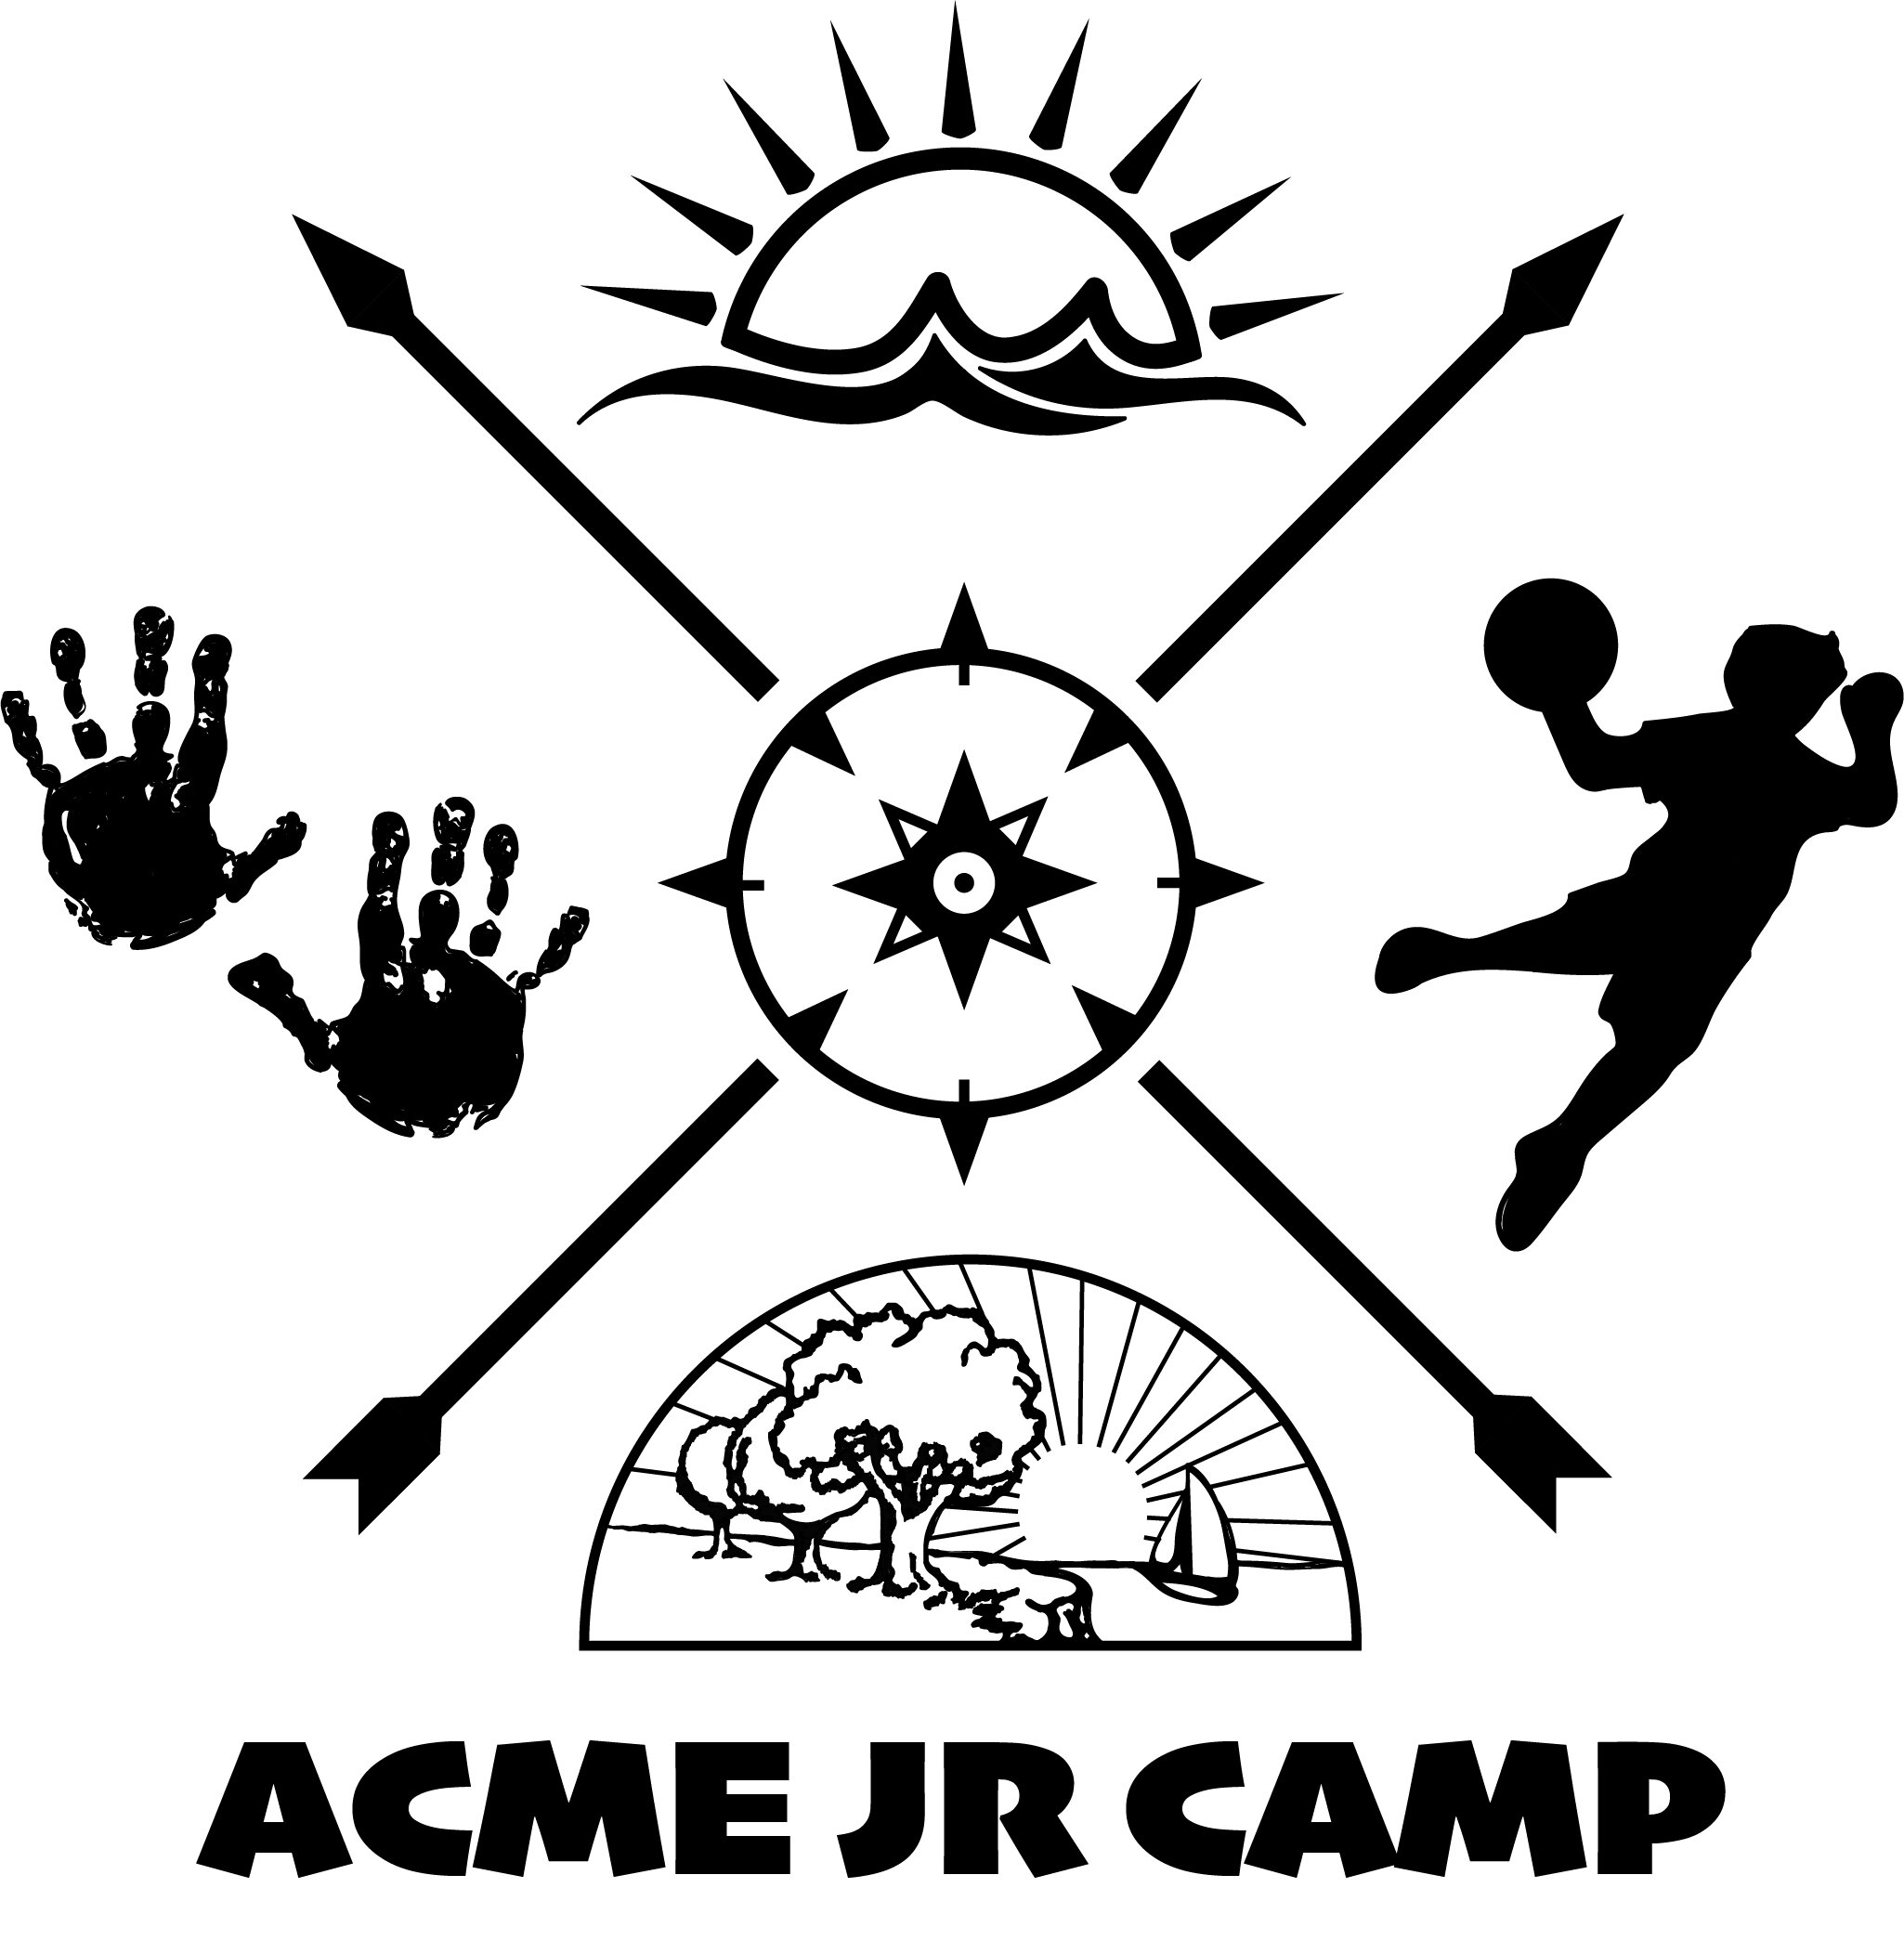 Acme Jr Camp Draft 2.jpg